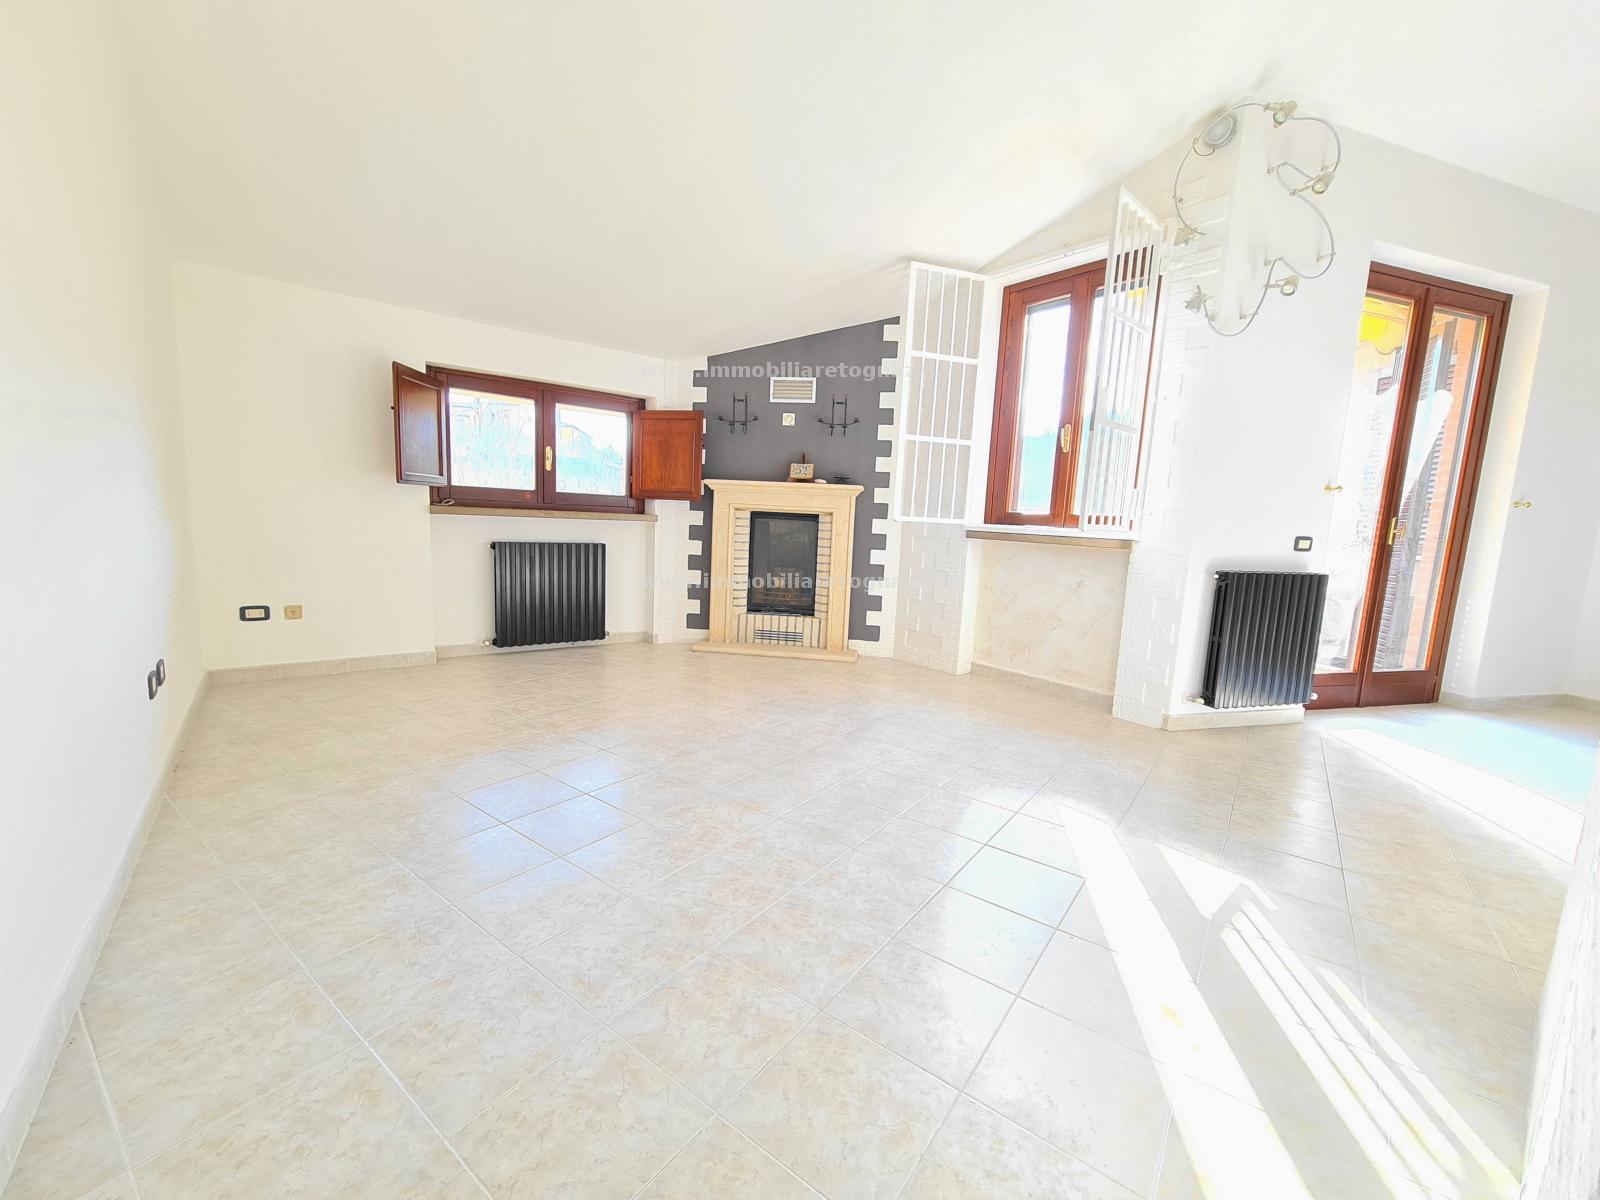 Appartamento in vendita a San Gimignano, 5 locali, prezzo € 300.000 | PortaleAgenzieImmobiliari.it